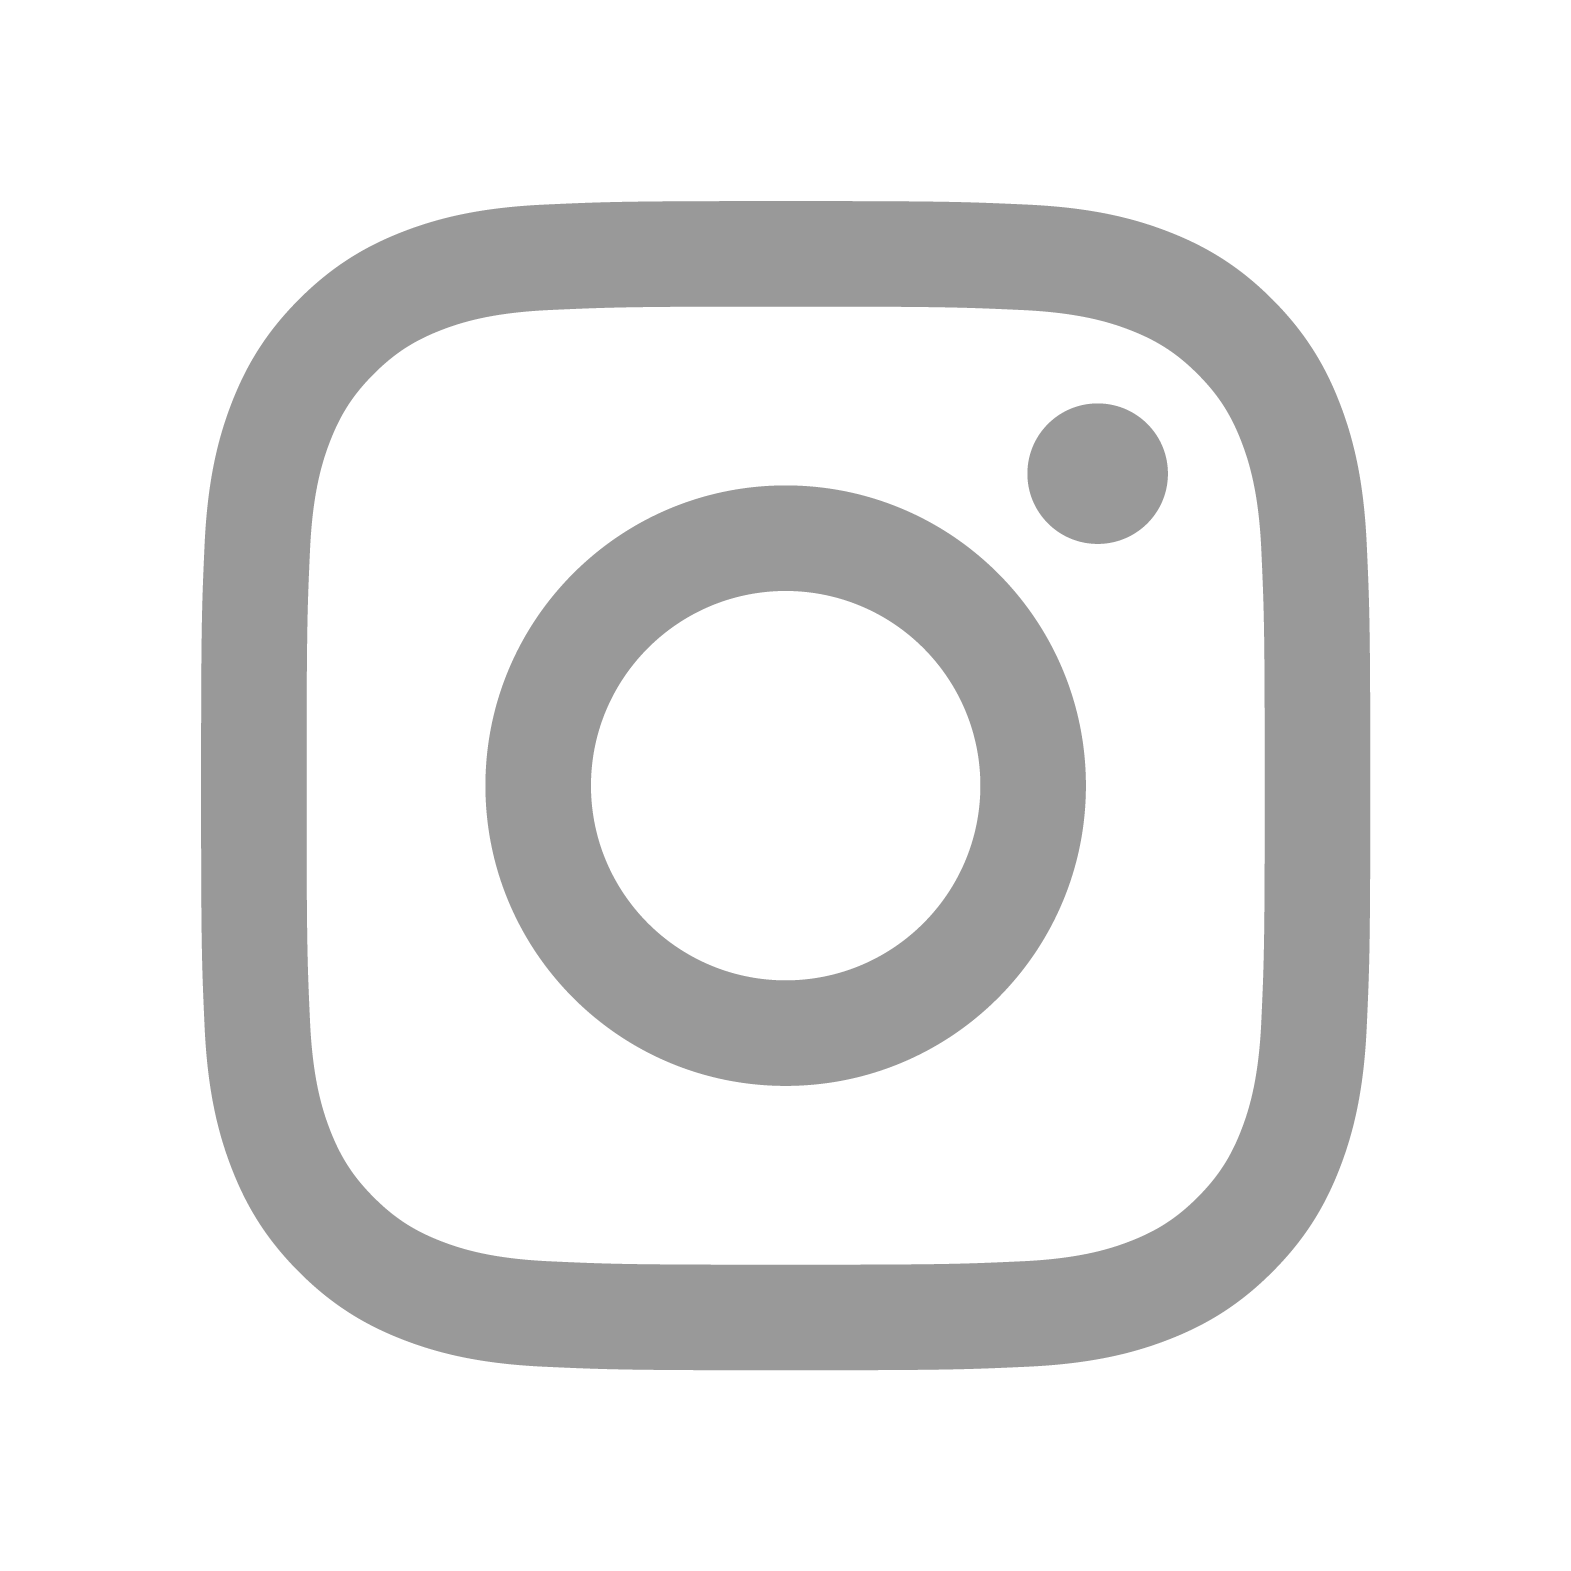 Instagram White Circle Circle